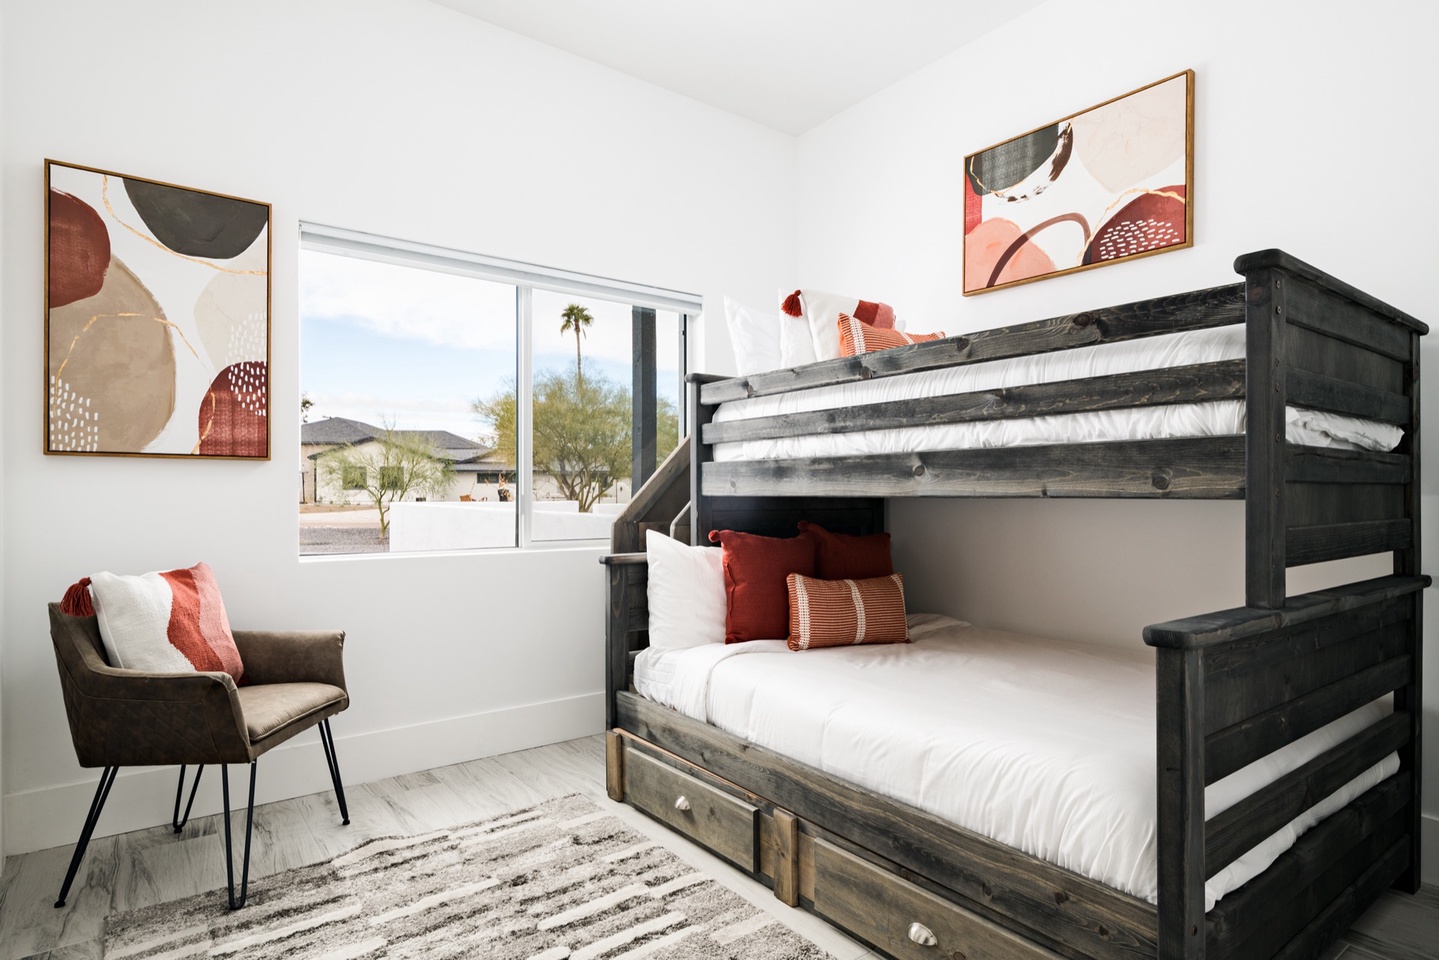 Bedroom 5 - Bunk beds with twin over queen